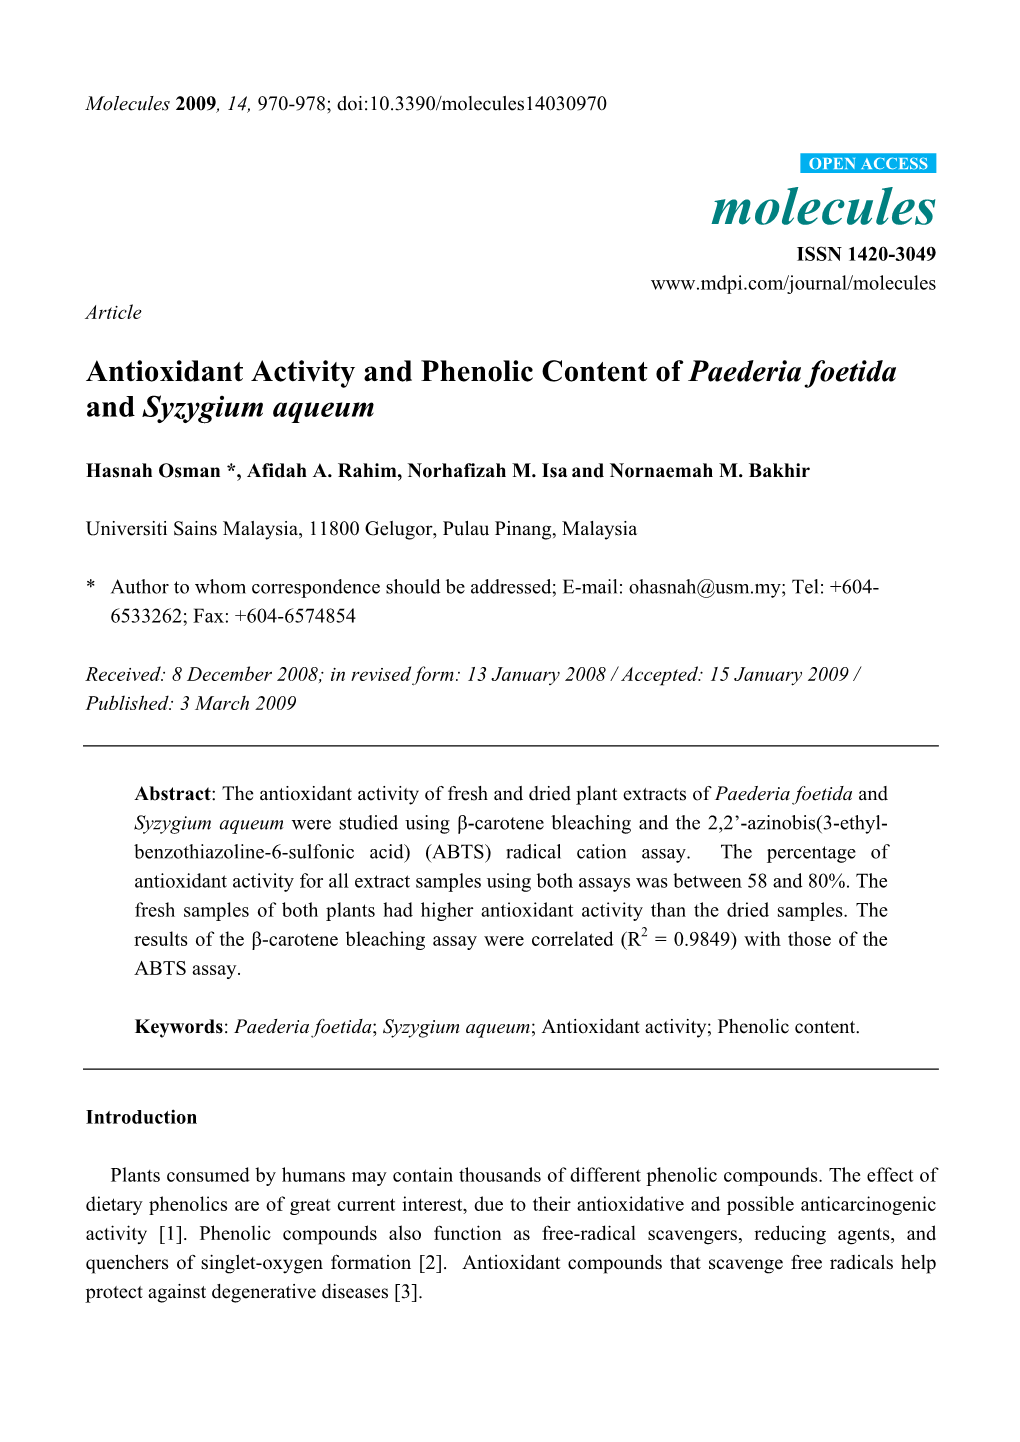 Antioxidant Activity and Phenolic Content of Paederia Foetida and Syzygium Aqueum